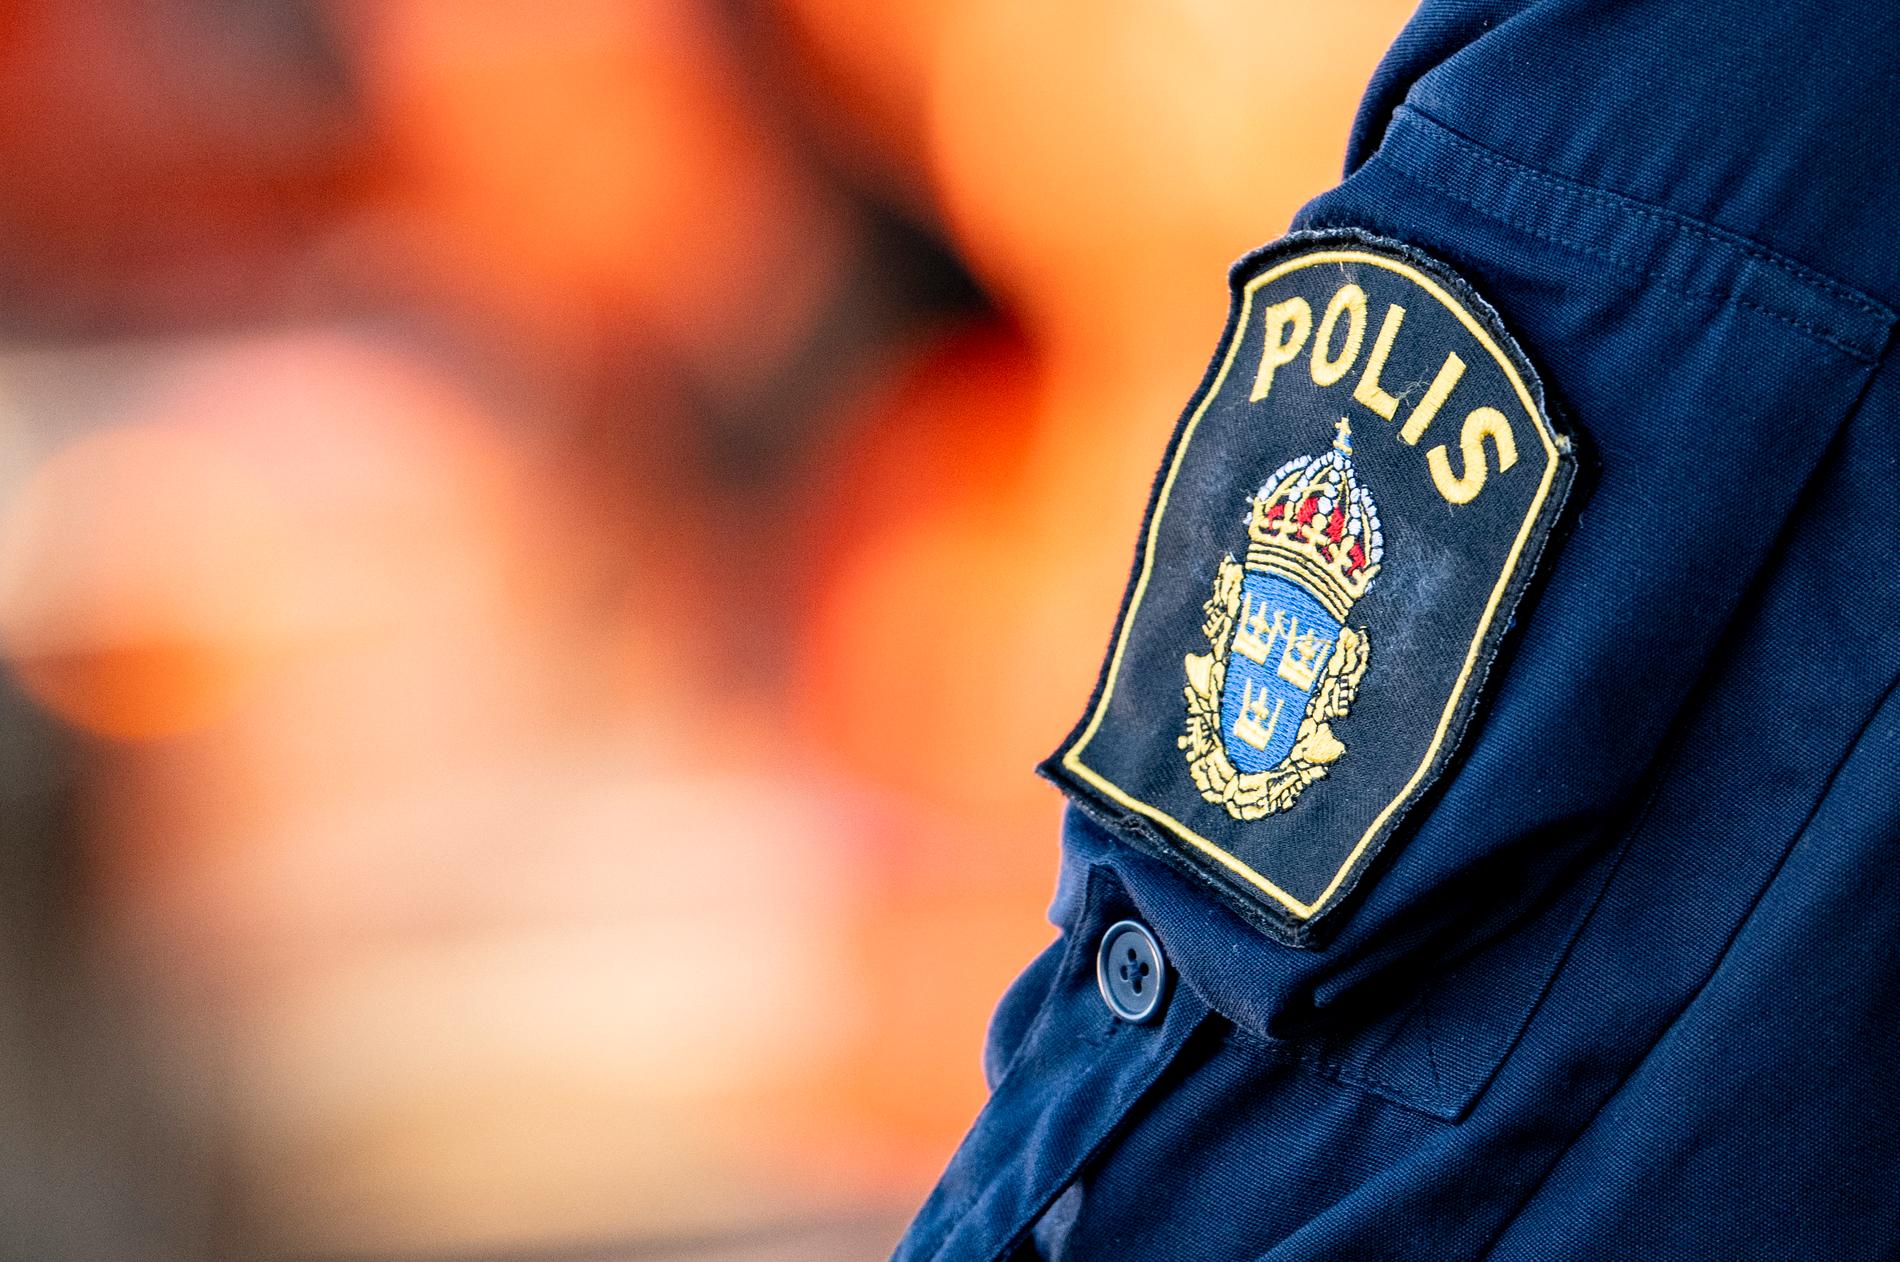 Fem personer som greps i Arboga i söndags har anhållits. Arkivbild.